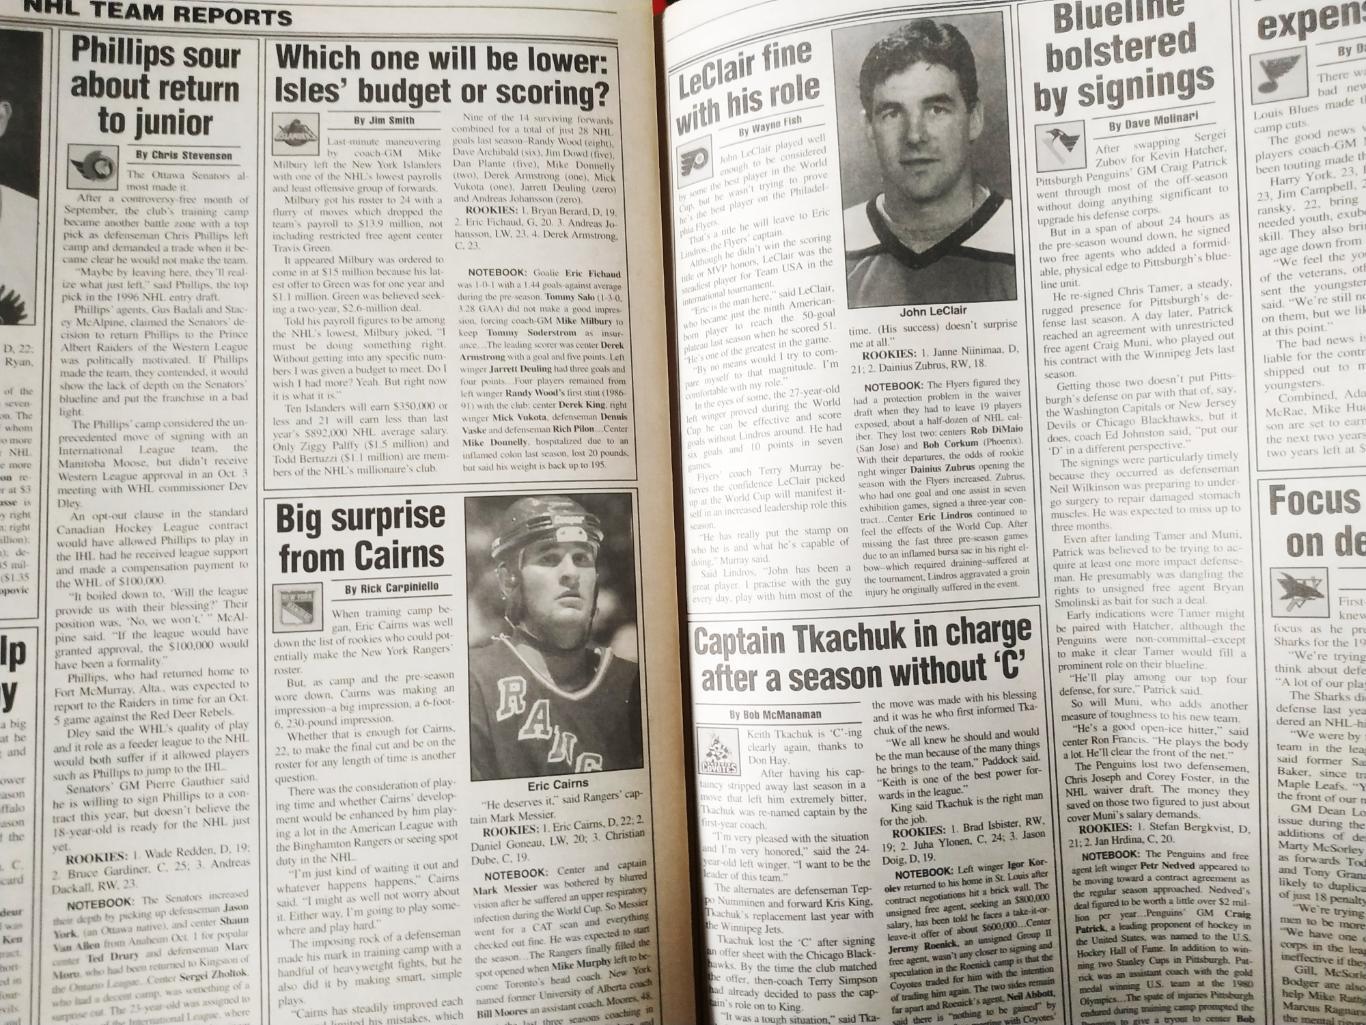 ХОККЕЙ ЖУРНАЛ ЕЖЕНЕДЕЛЬНИК НХЛ НОВОСТИ ХОККЕЯ NHL OCT.18 1996 THE HOCKEY NEWS 5